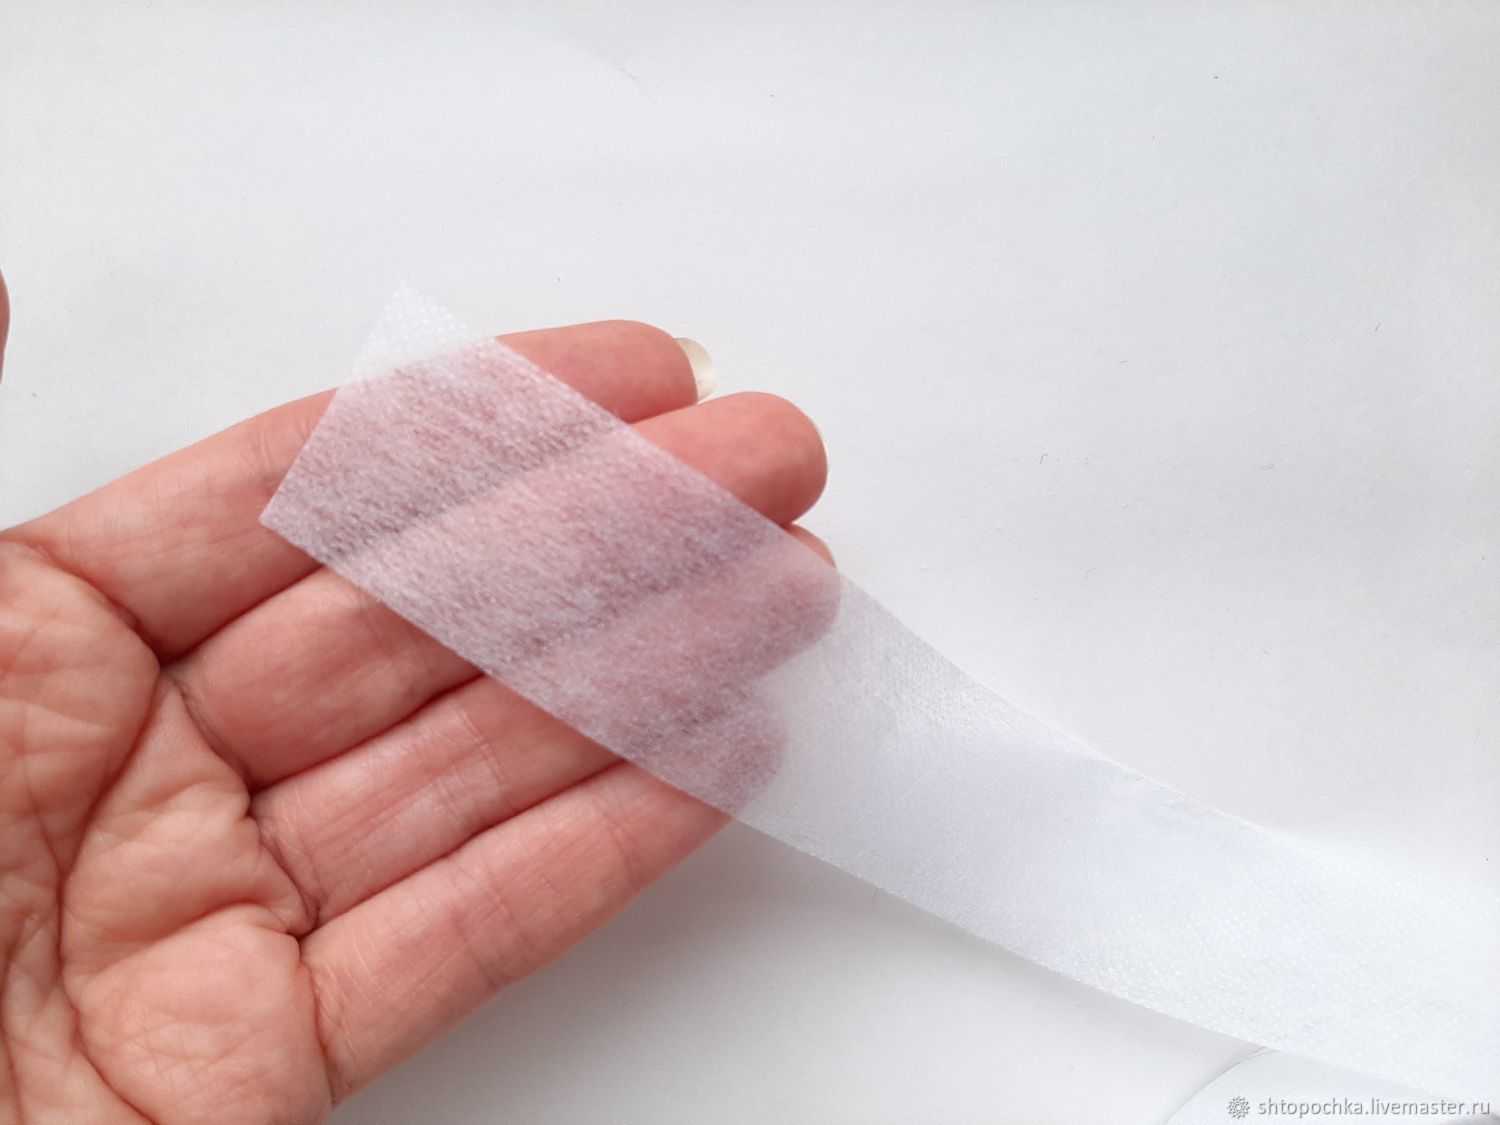 Паутинка для ремонта одежды, клейкая лента для ткани, как пользоваться паутинкой для склеивания